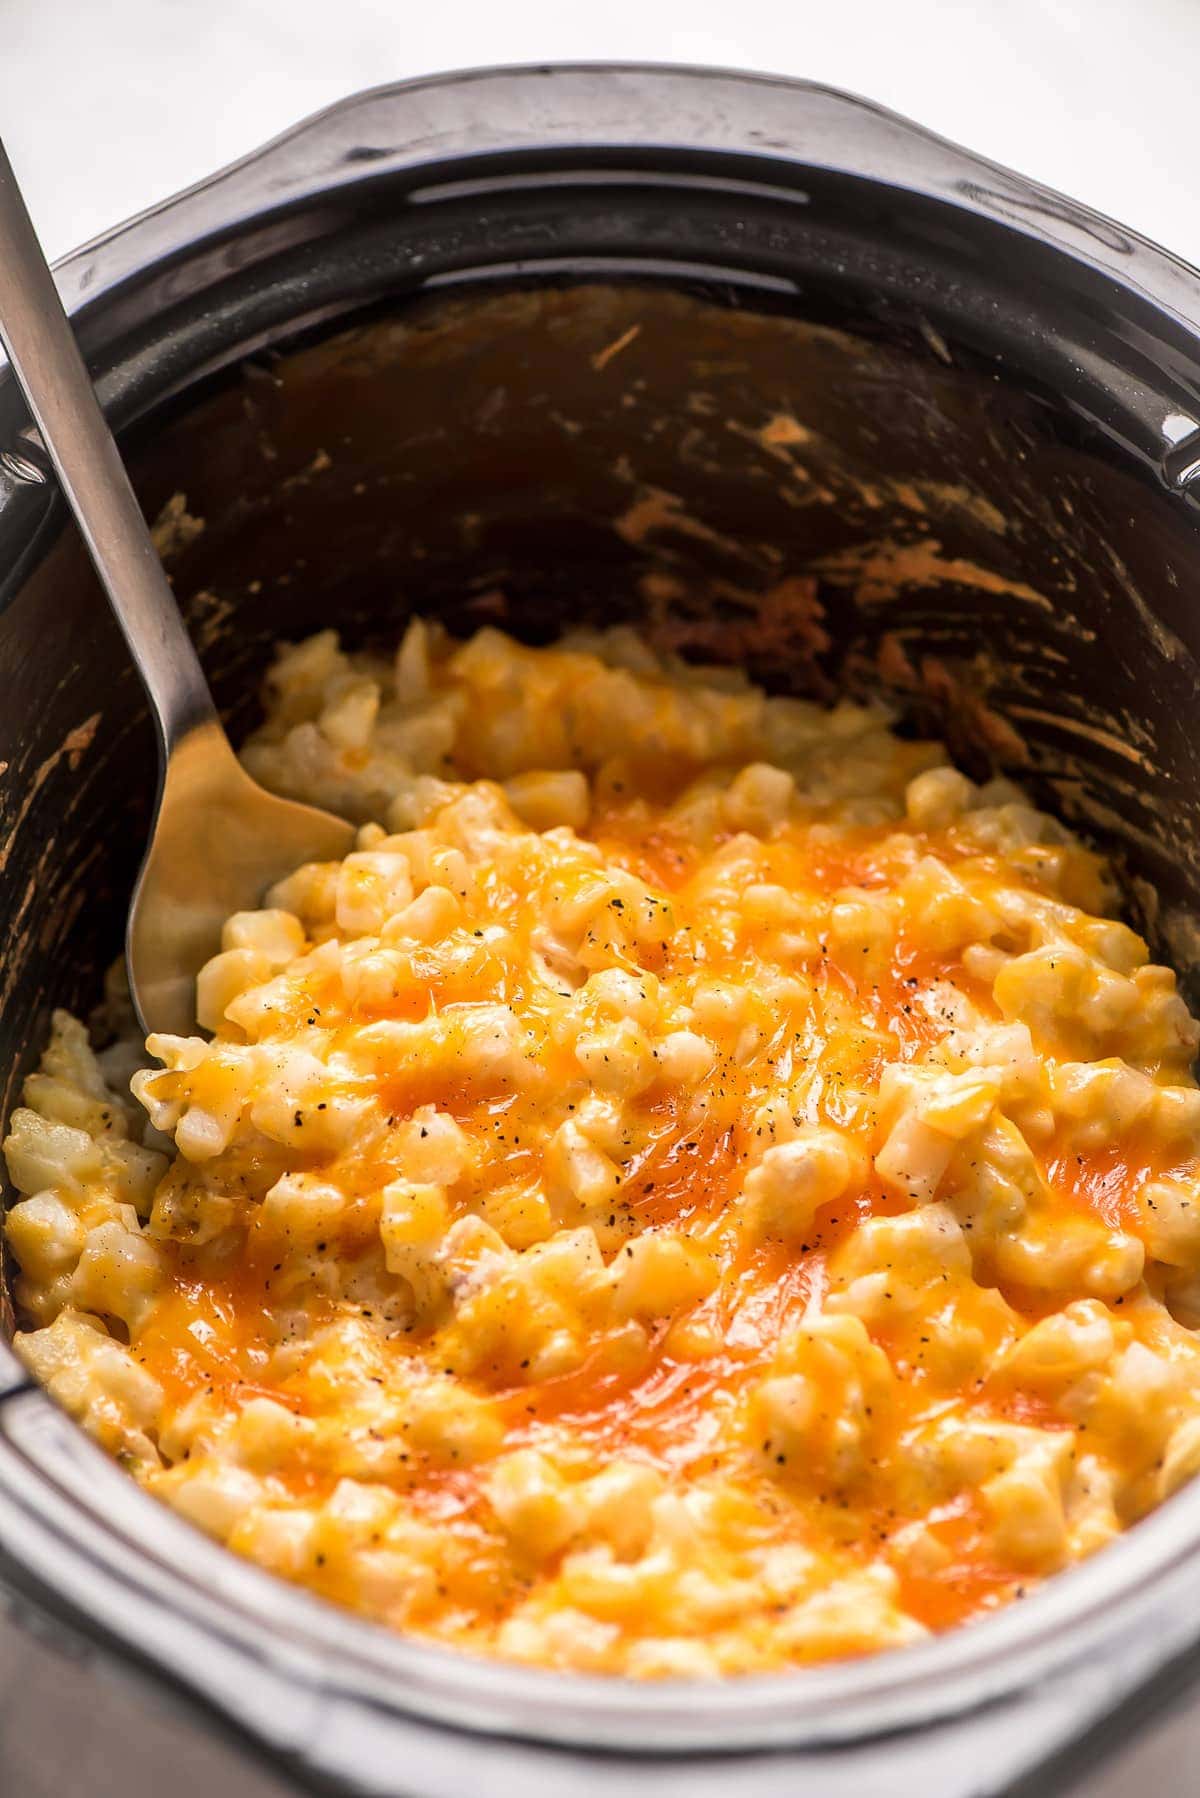 Crockpot奶酪土豆食谱覆盖在黏黏的奶酪。bob综合手机客户